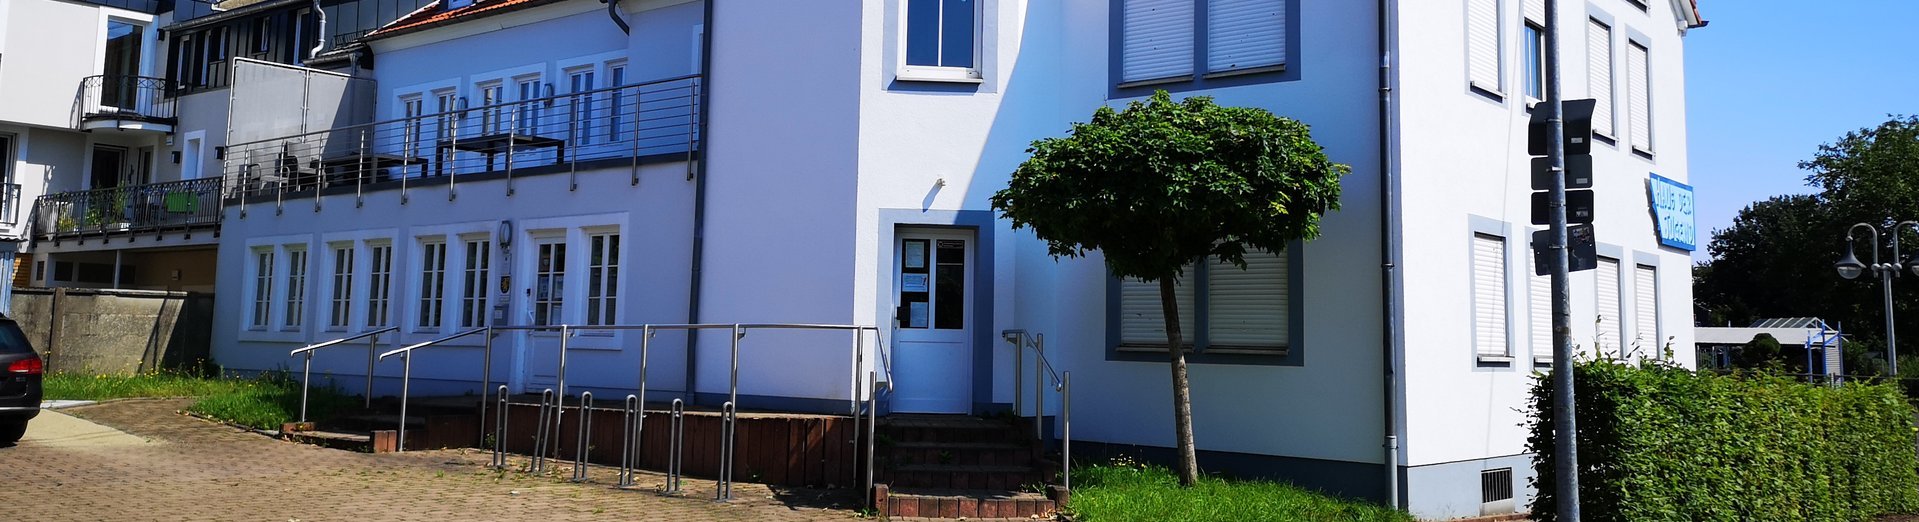 Das Bild zeigt die Rückansicht vom Haus der Jugend in der Engelstraße in Saarwellingen. Es ist ein hellblaues, dreistöckiges Haus. Der Eingang zum Amt für Jugend, Senioren und Soziales befindet sich hinter dem Haus und ist somit auf dem Foto sichtbar.